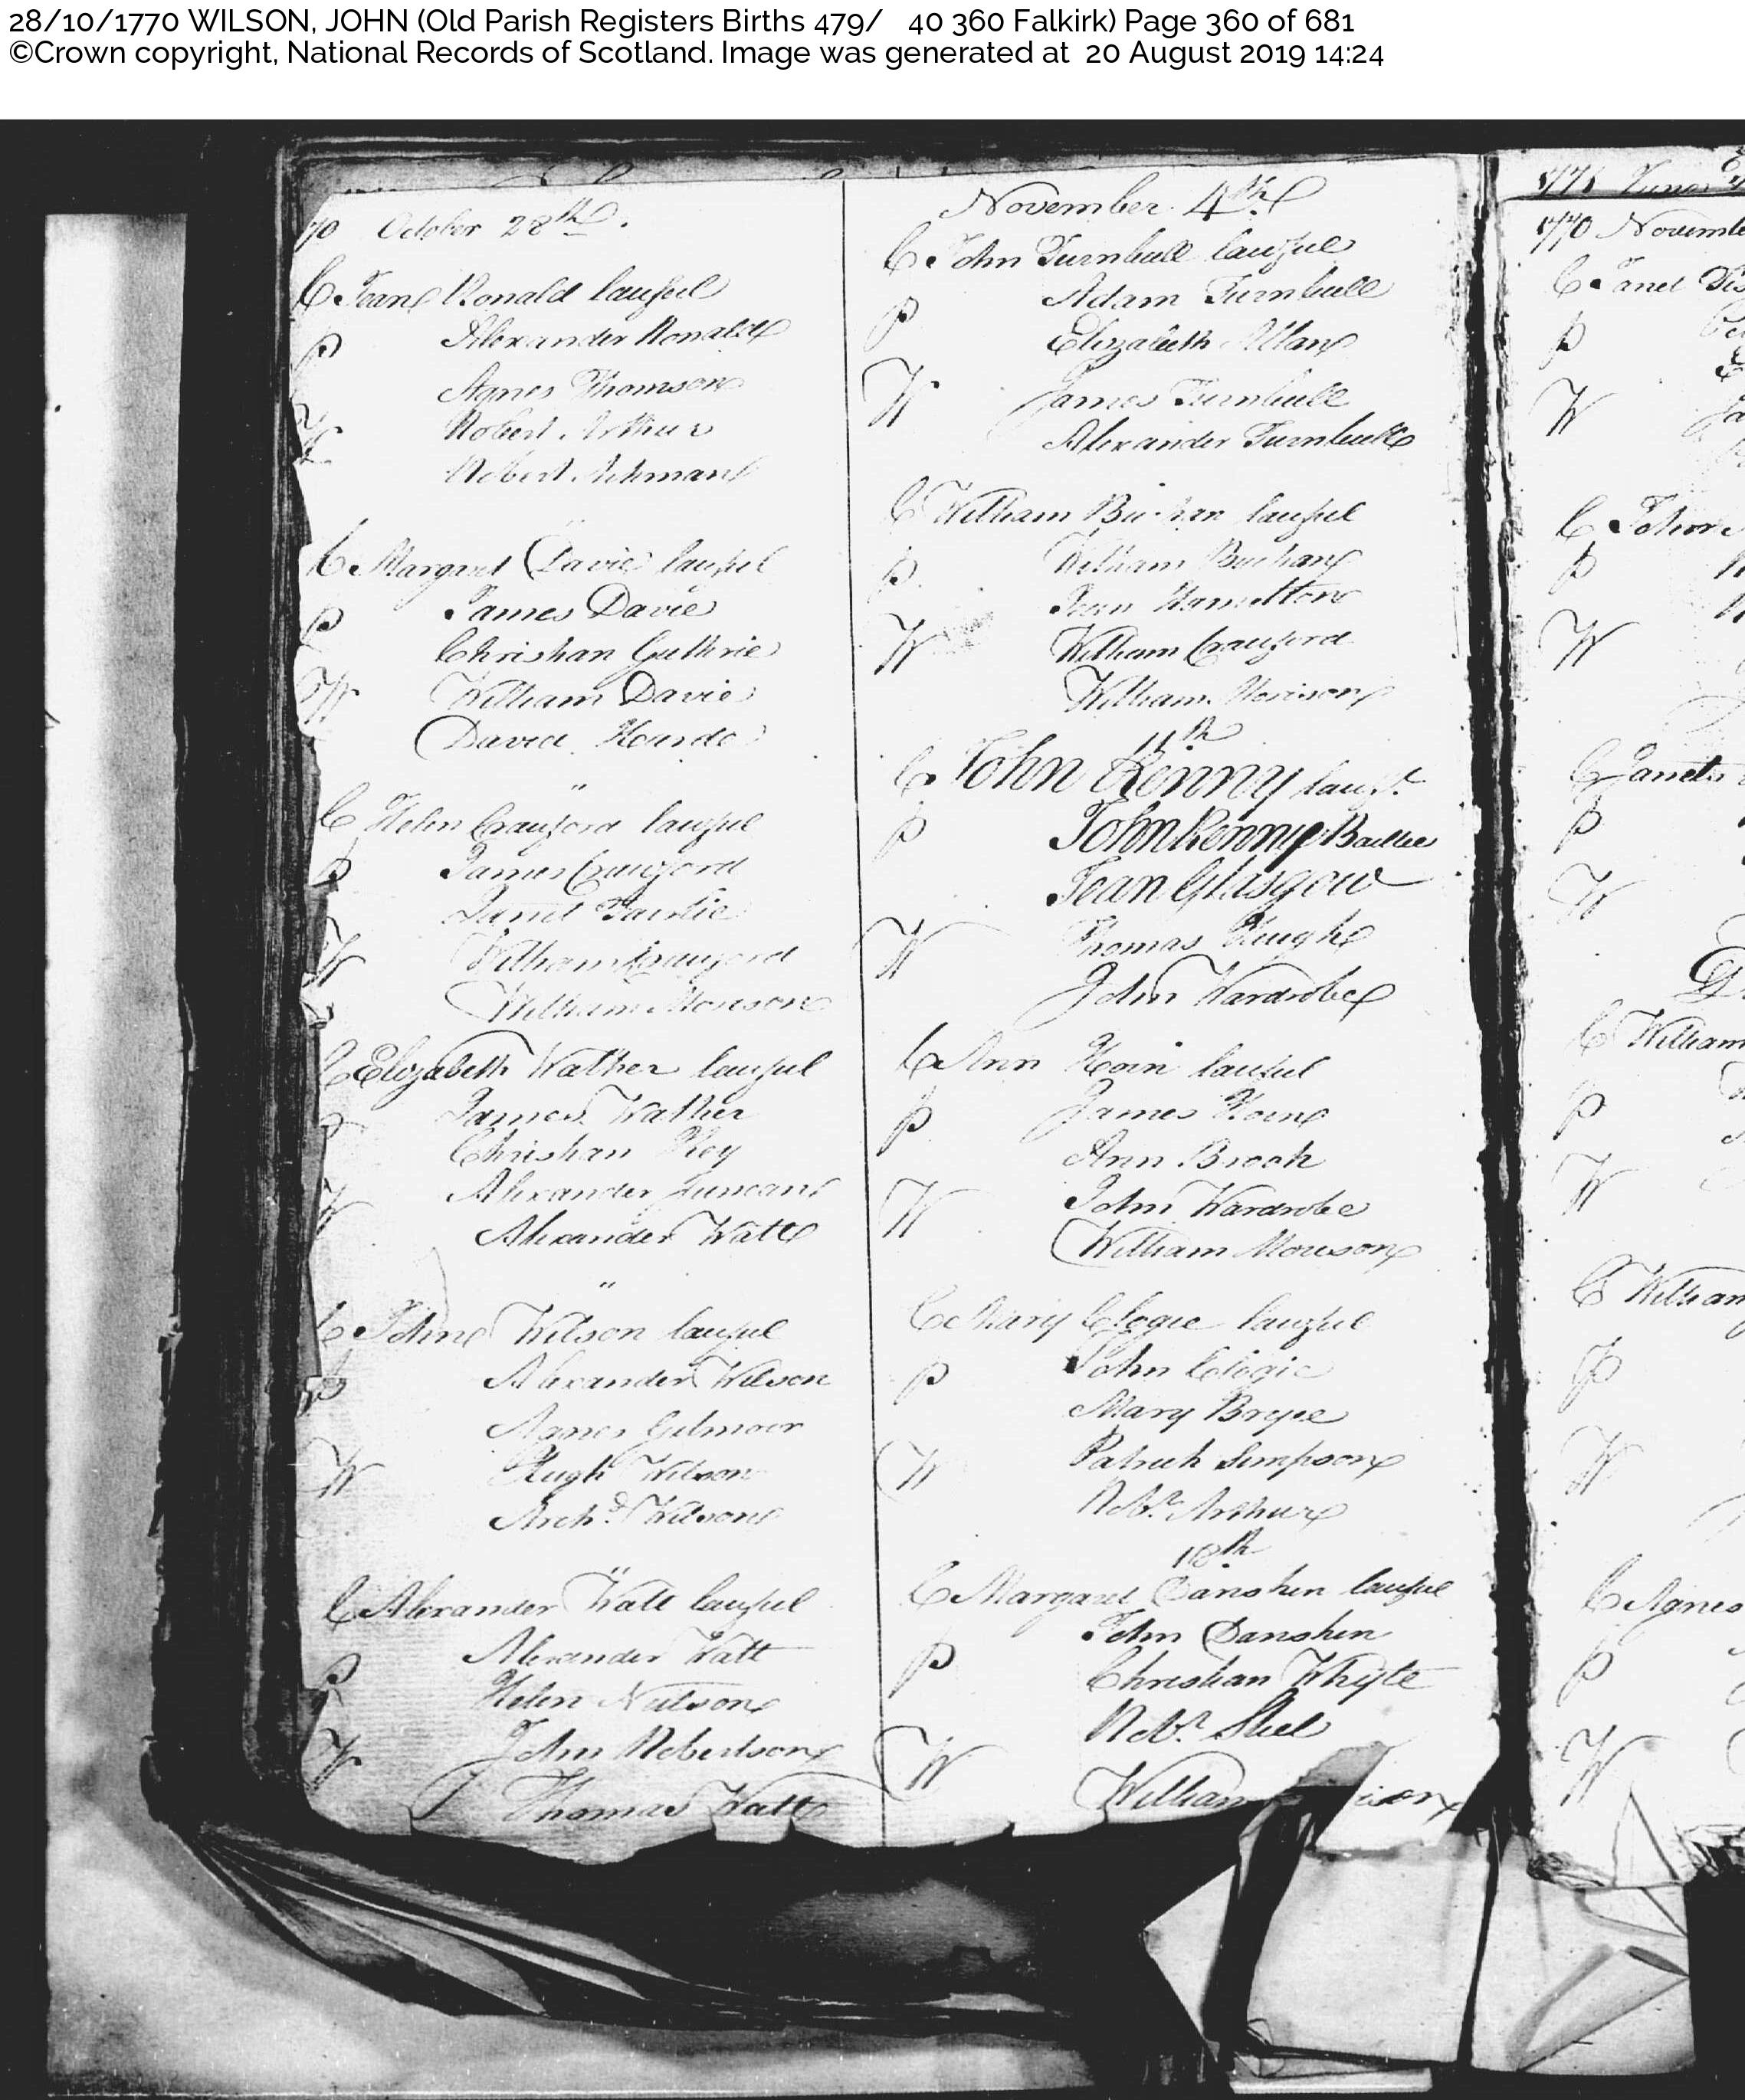 JohnWilson_B1770 Falkirk, October 28, 1770